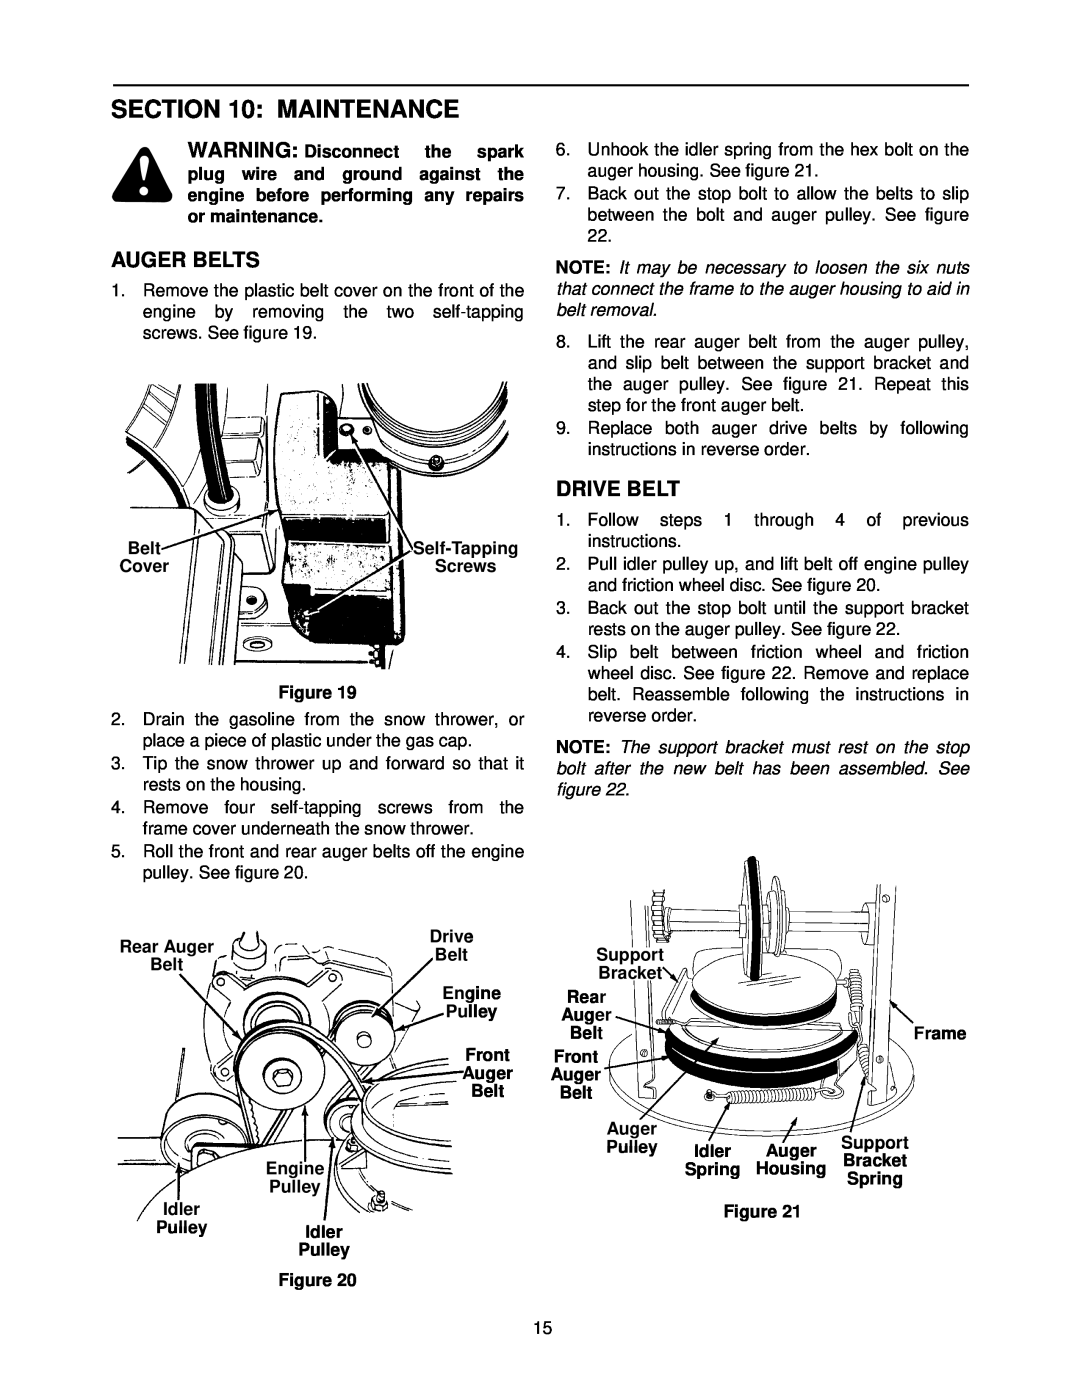 MTD E760, E740 manual Maintenance, Auger Belts, Drive Belt 